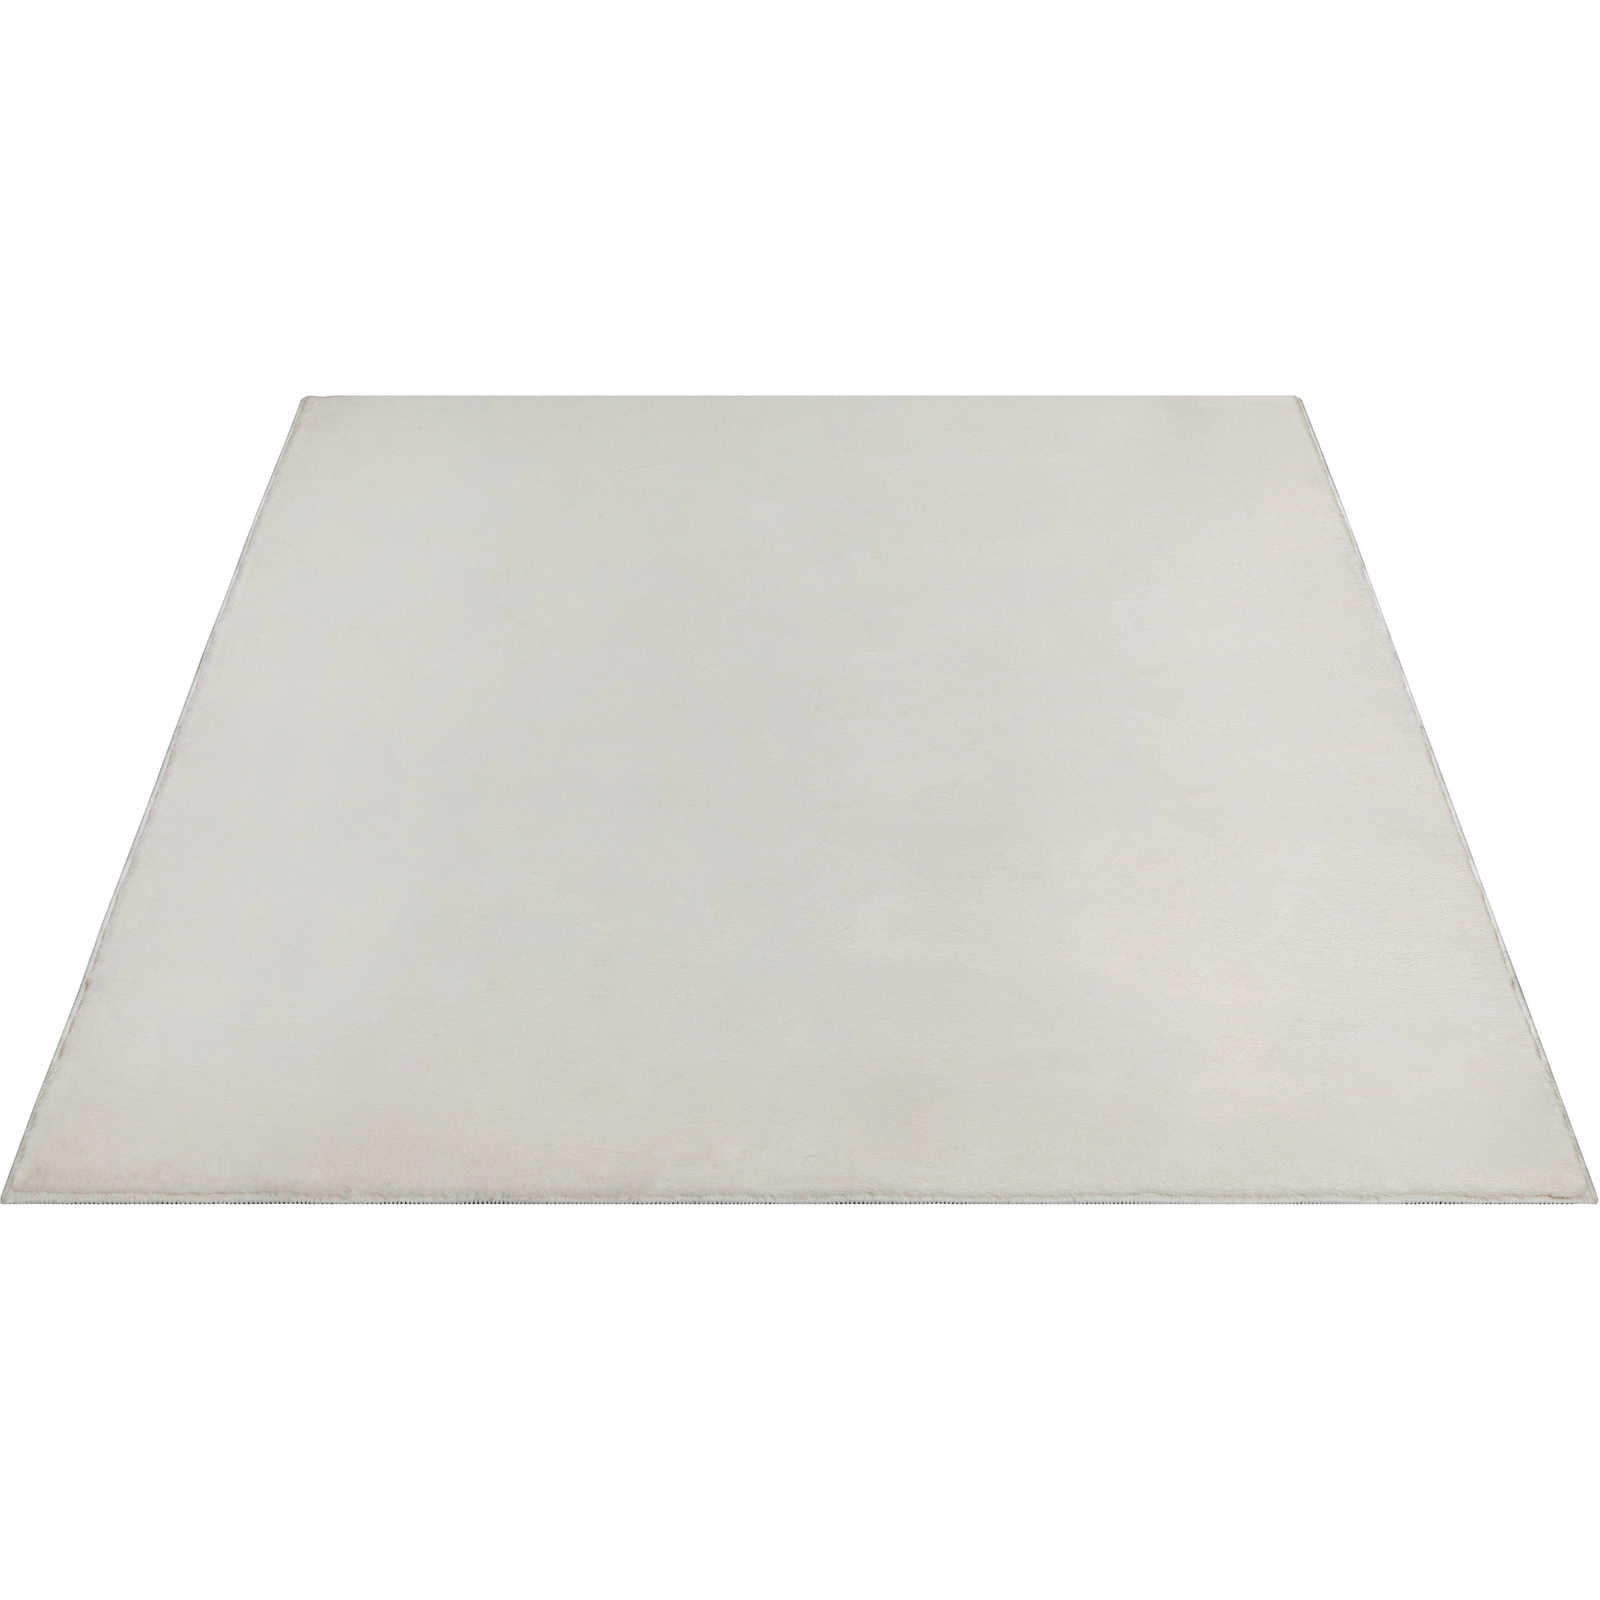 Zacht hoogpolig tapijt in crème - 340 x 240 cm
